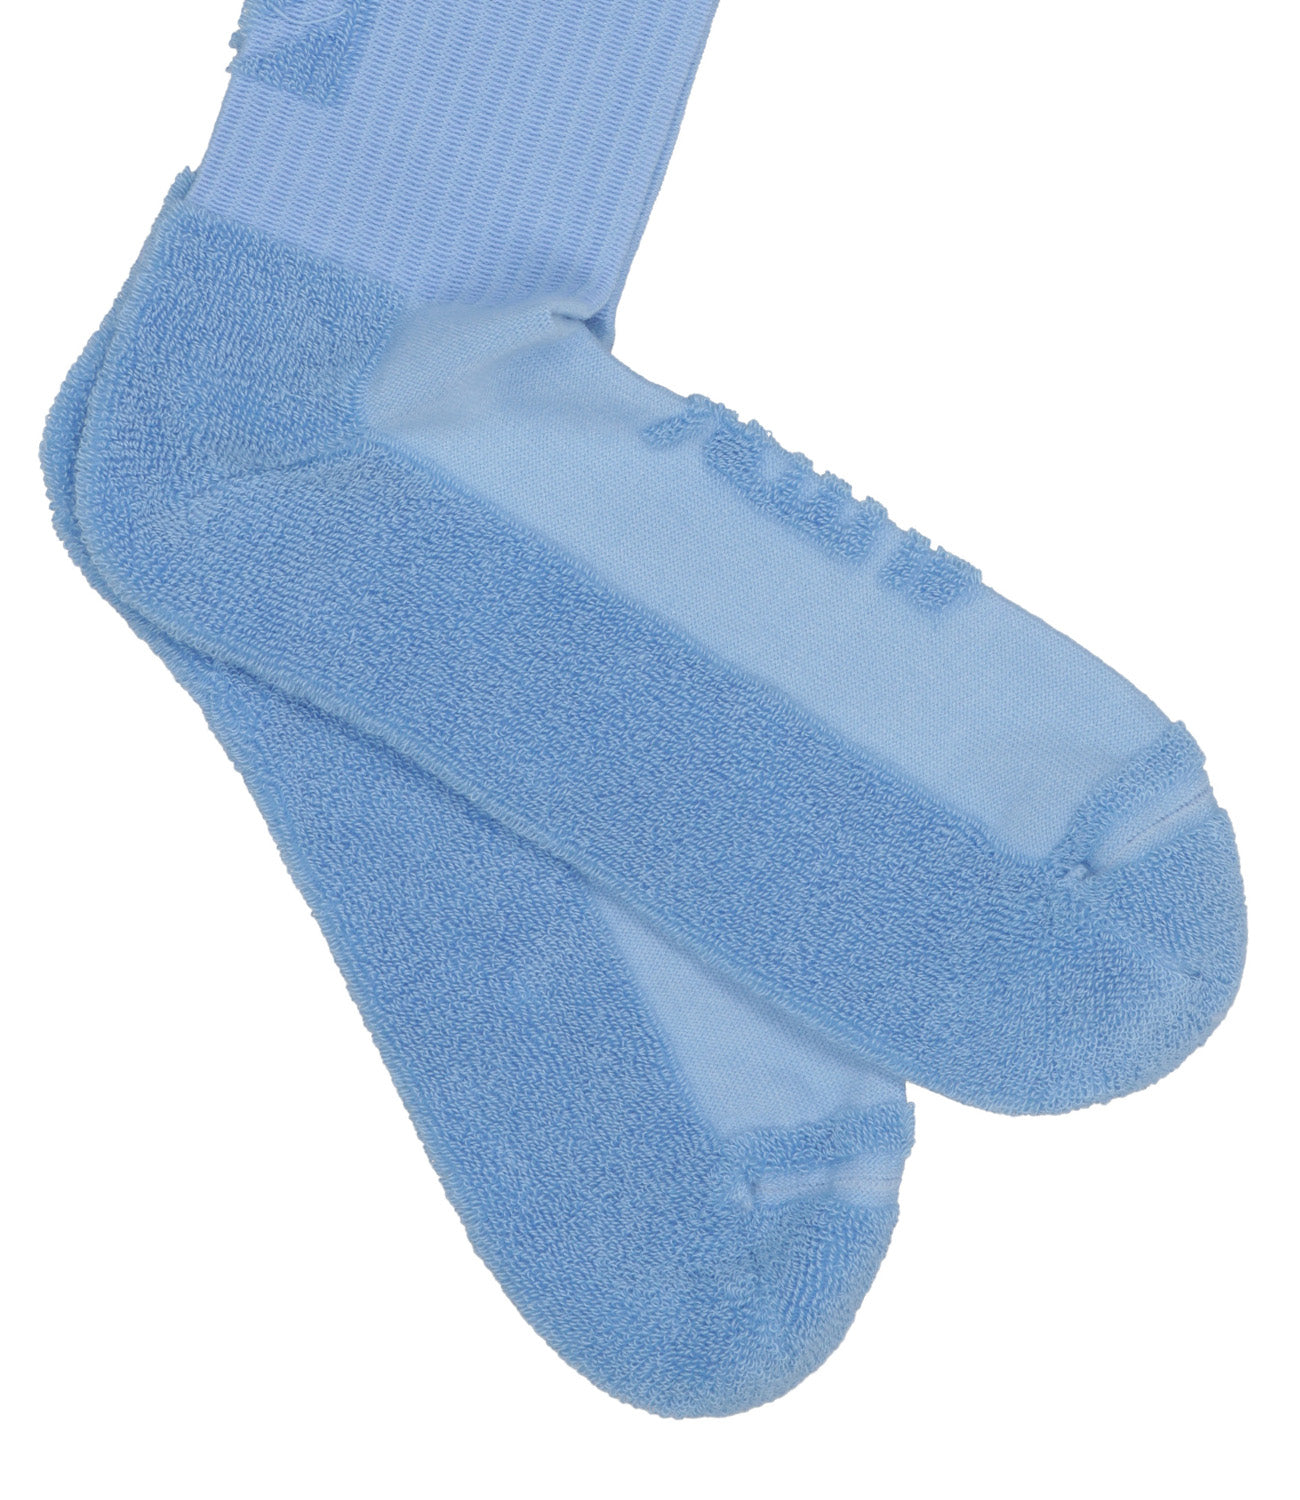 Autry | Blue Socks